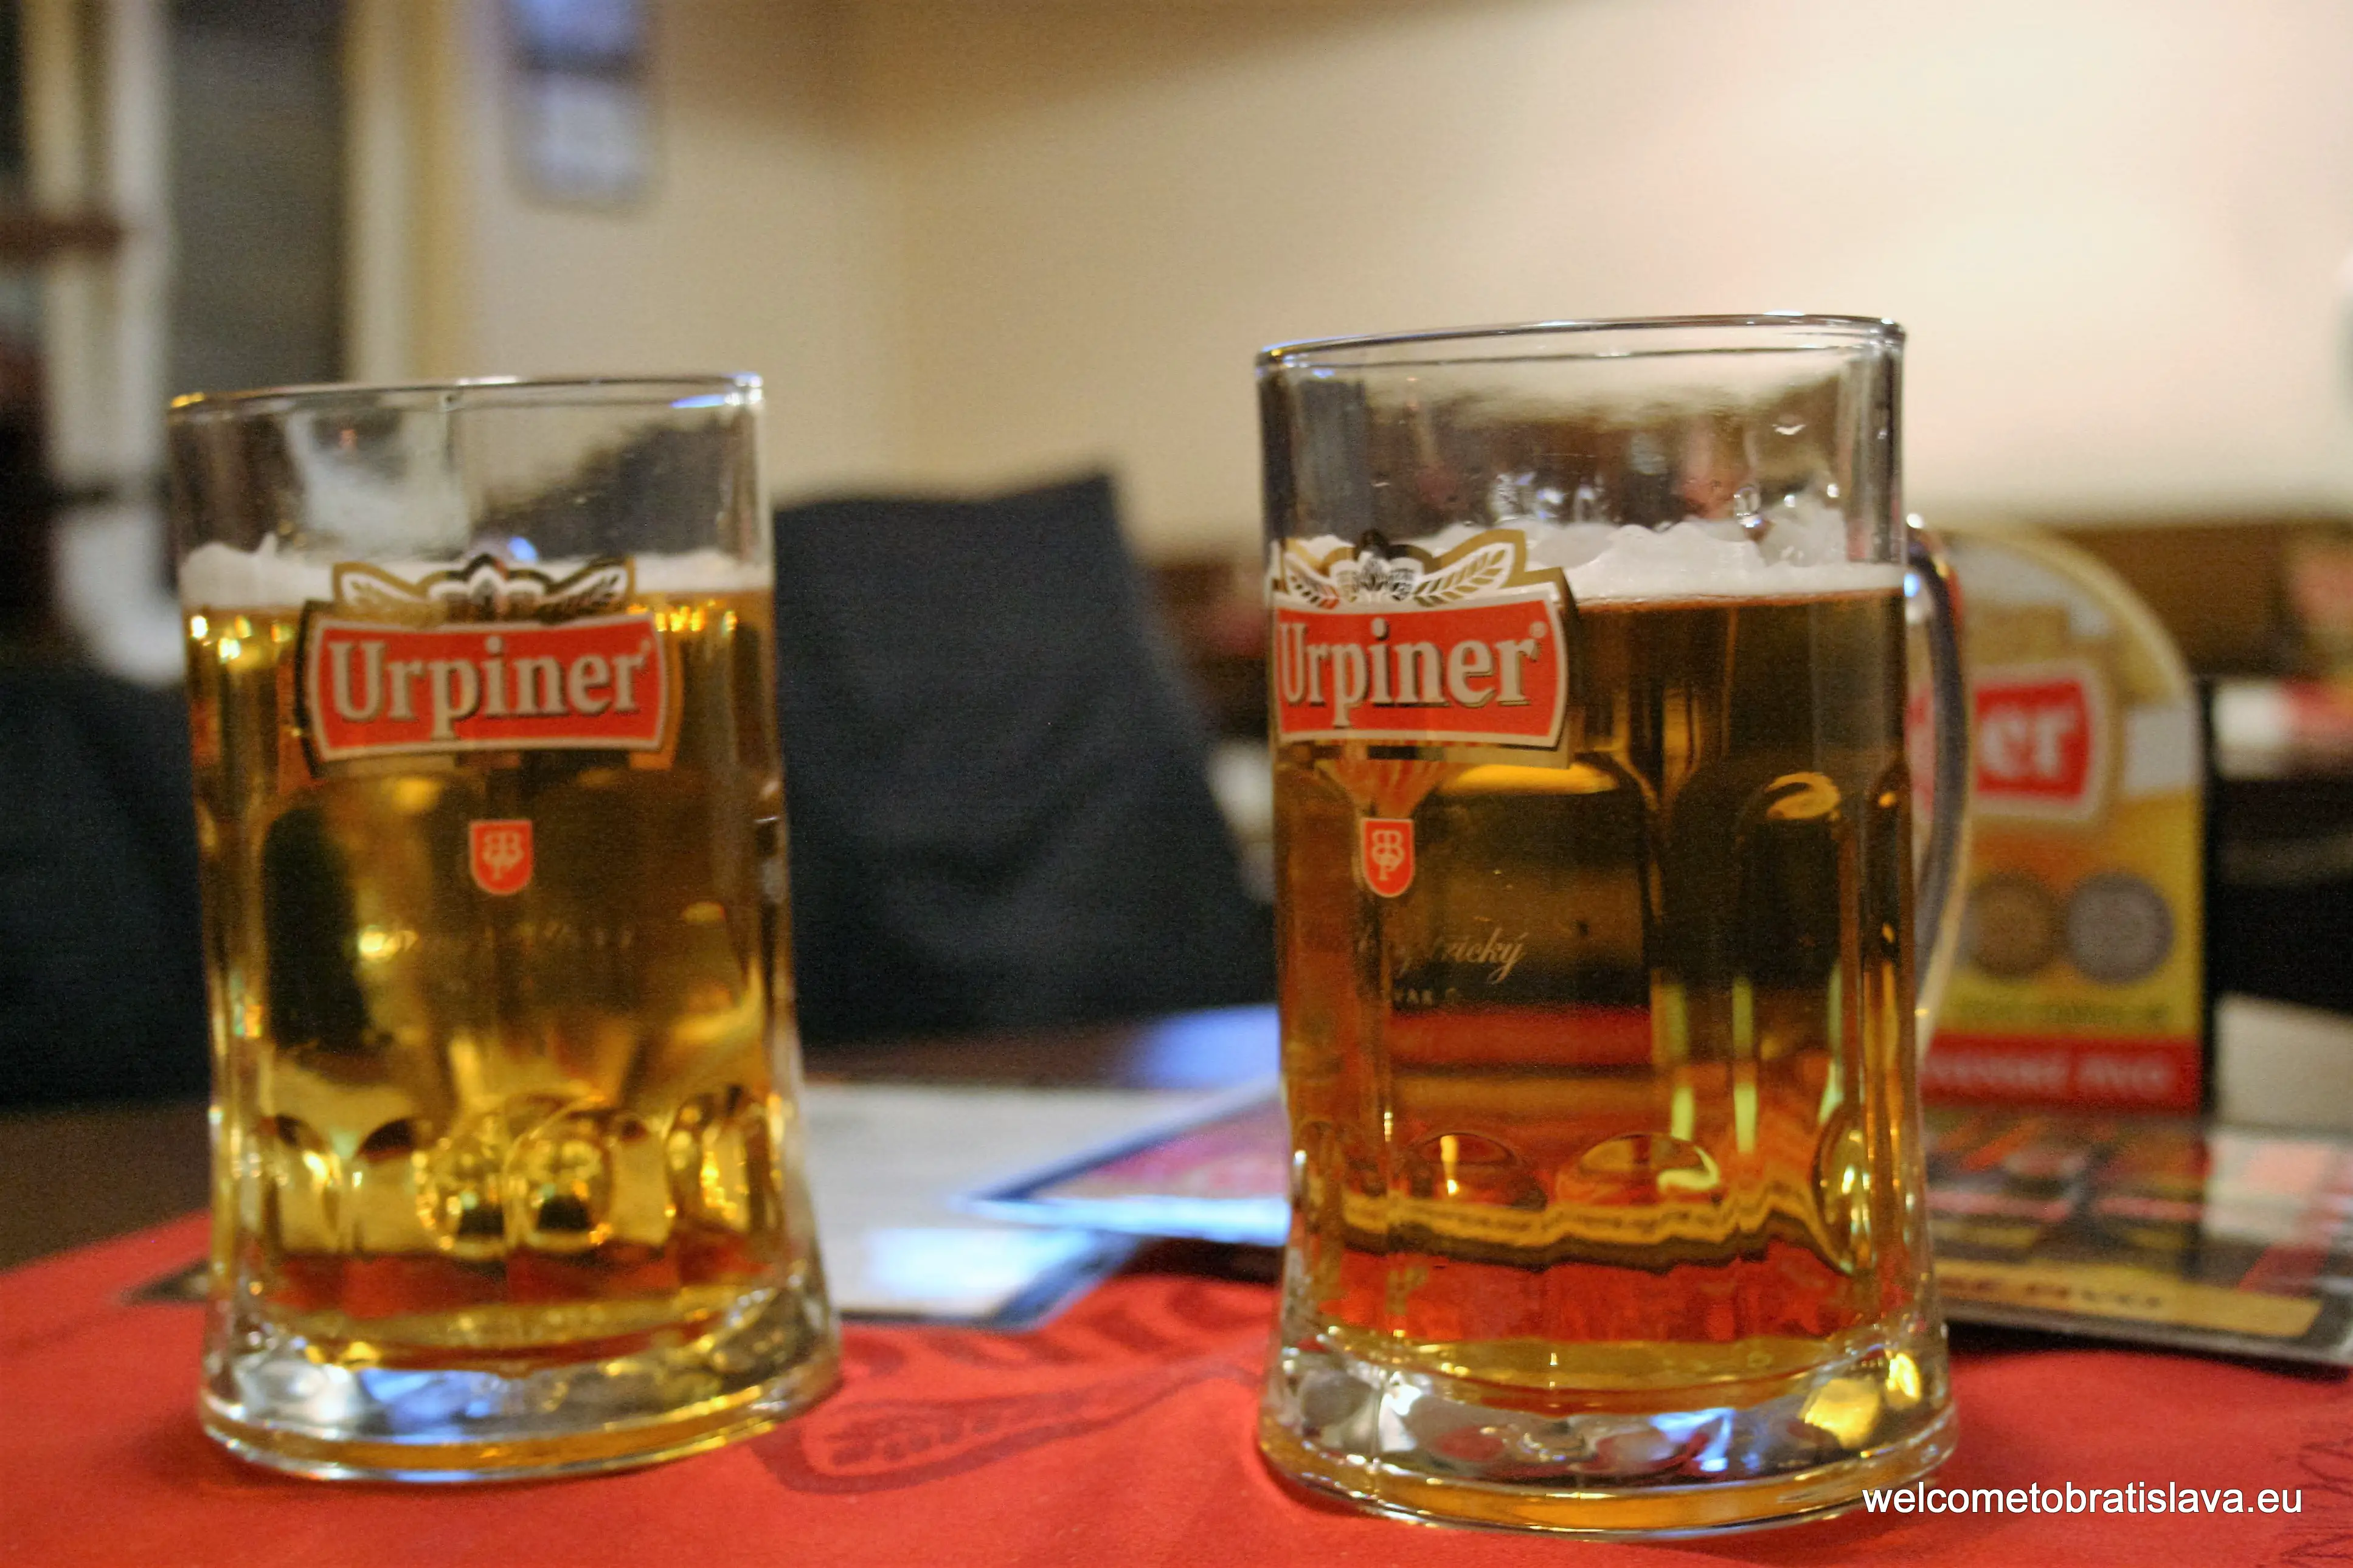 Best beer places in Bratislava - Urpiner